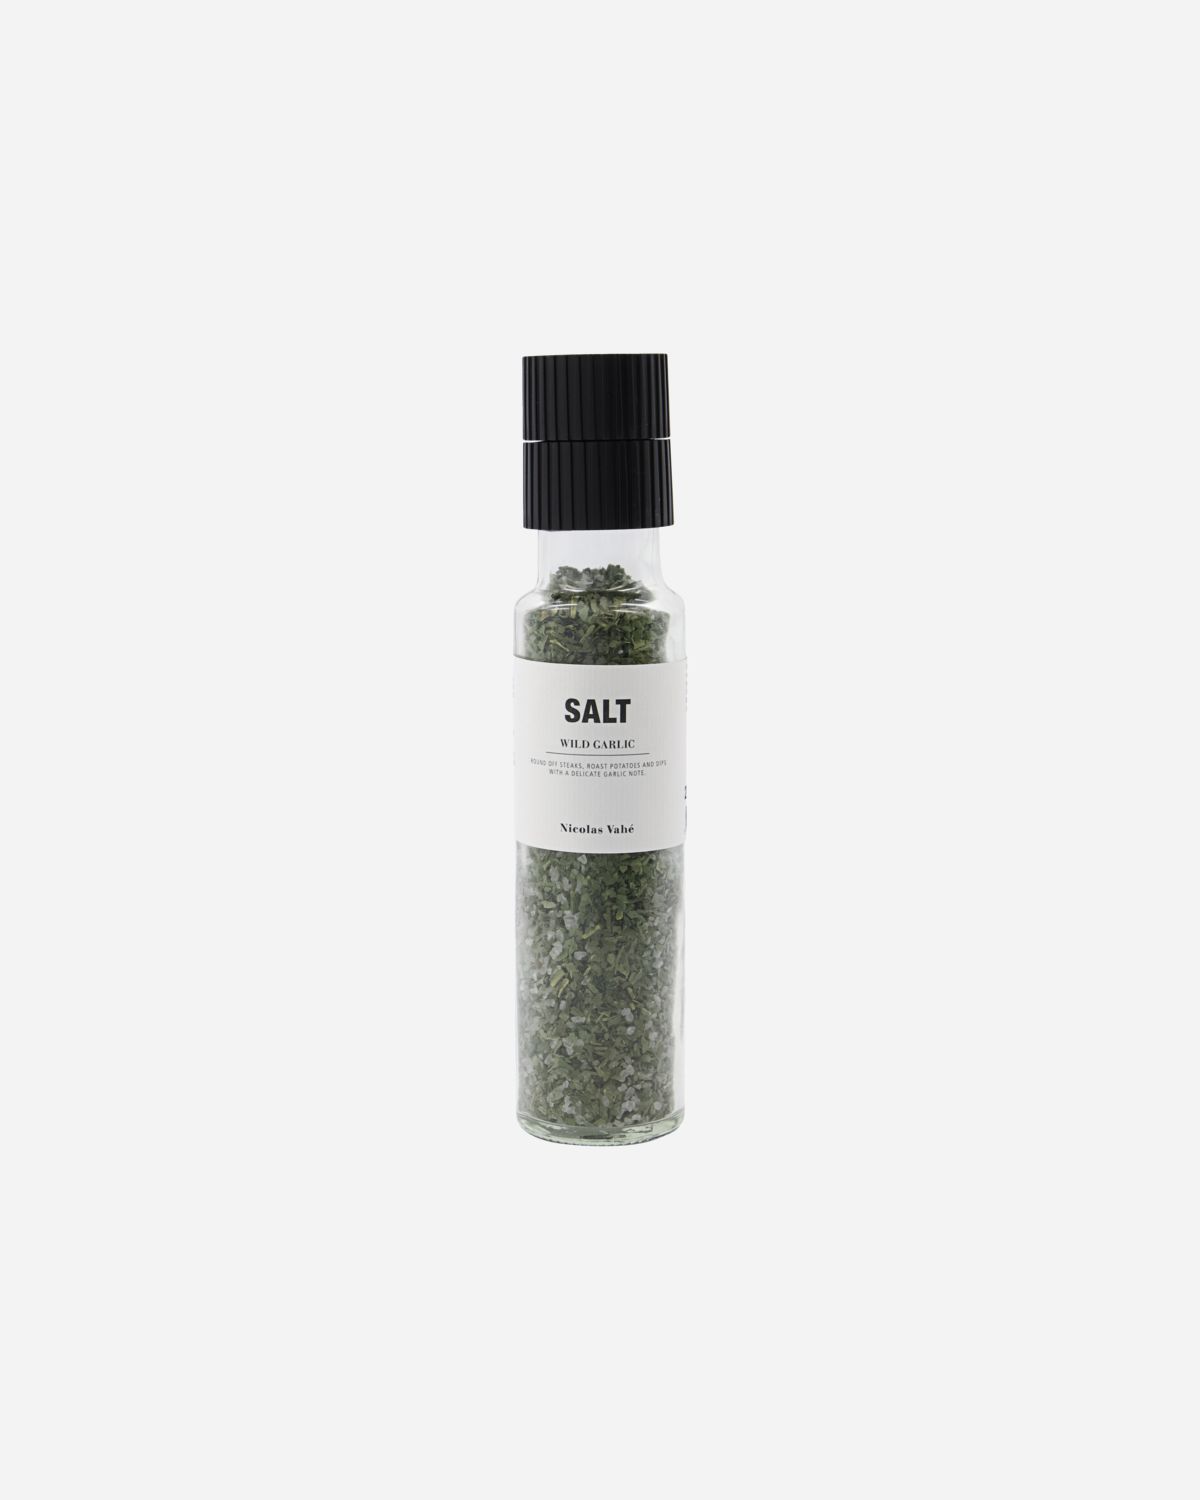 Salt, wild garlic, 215 g.